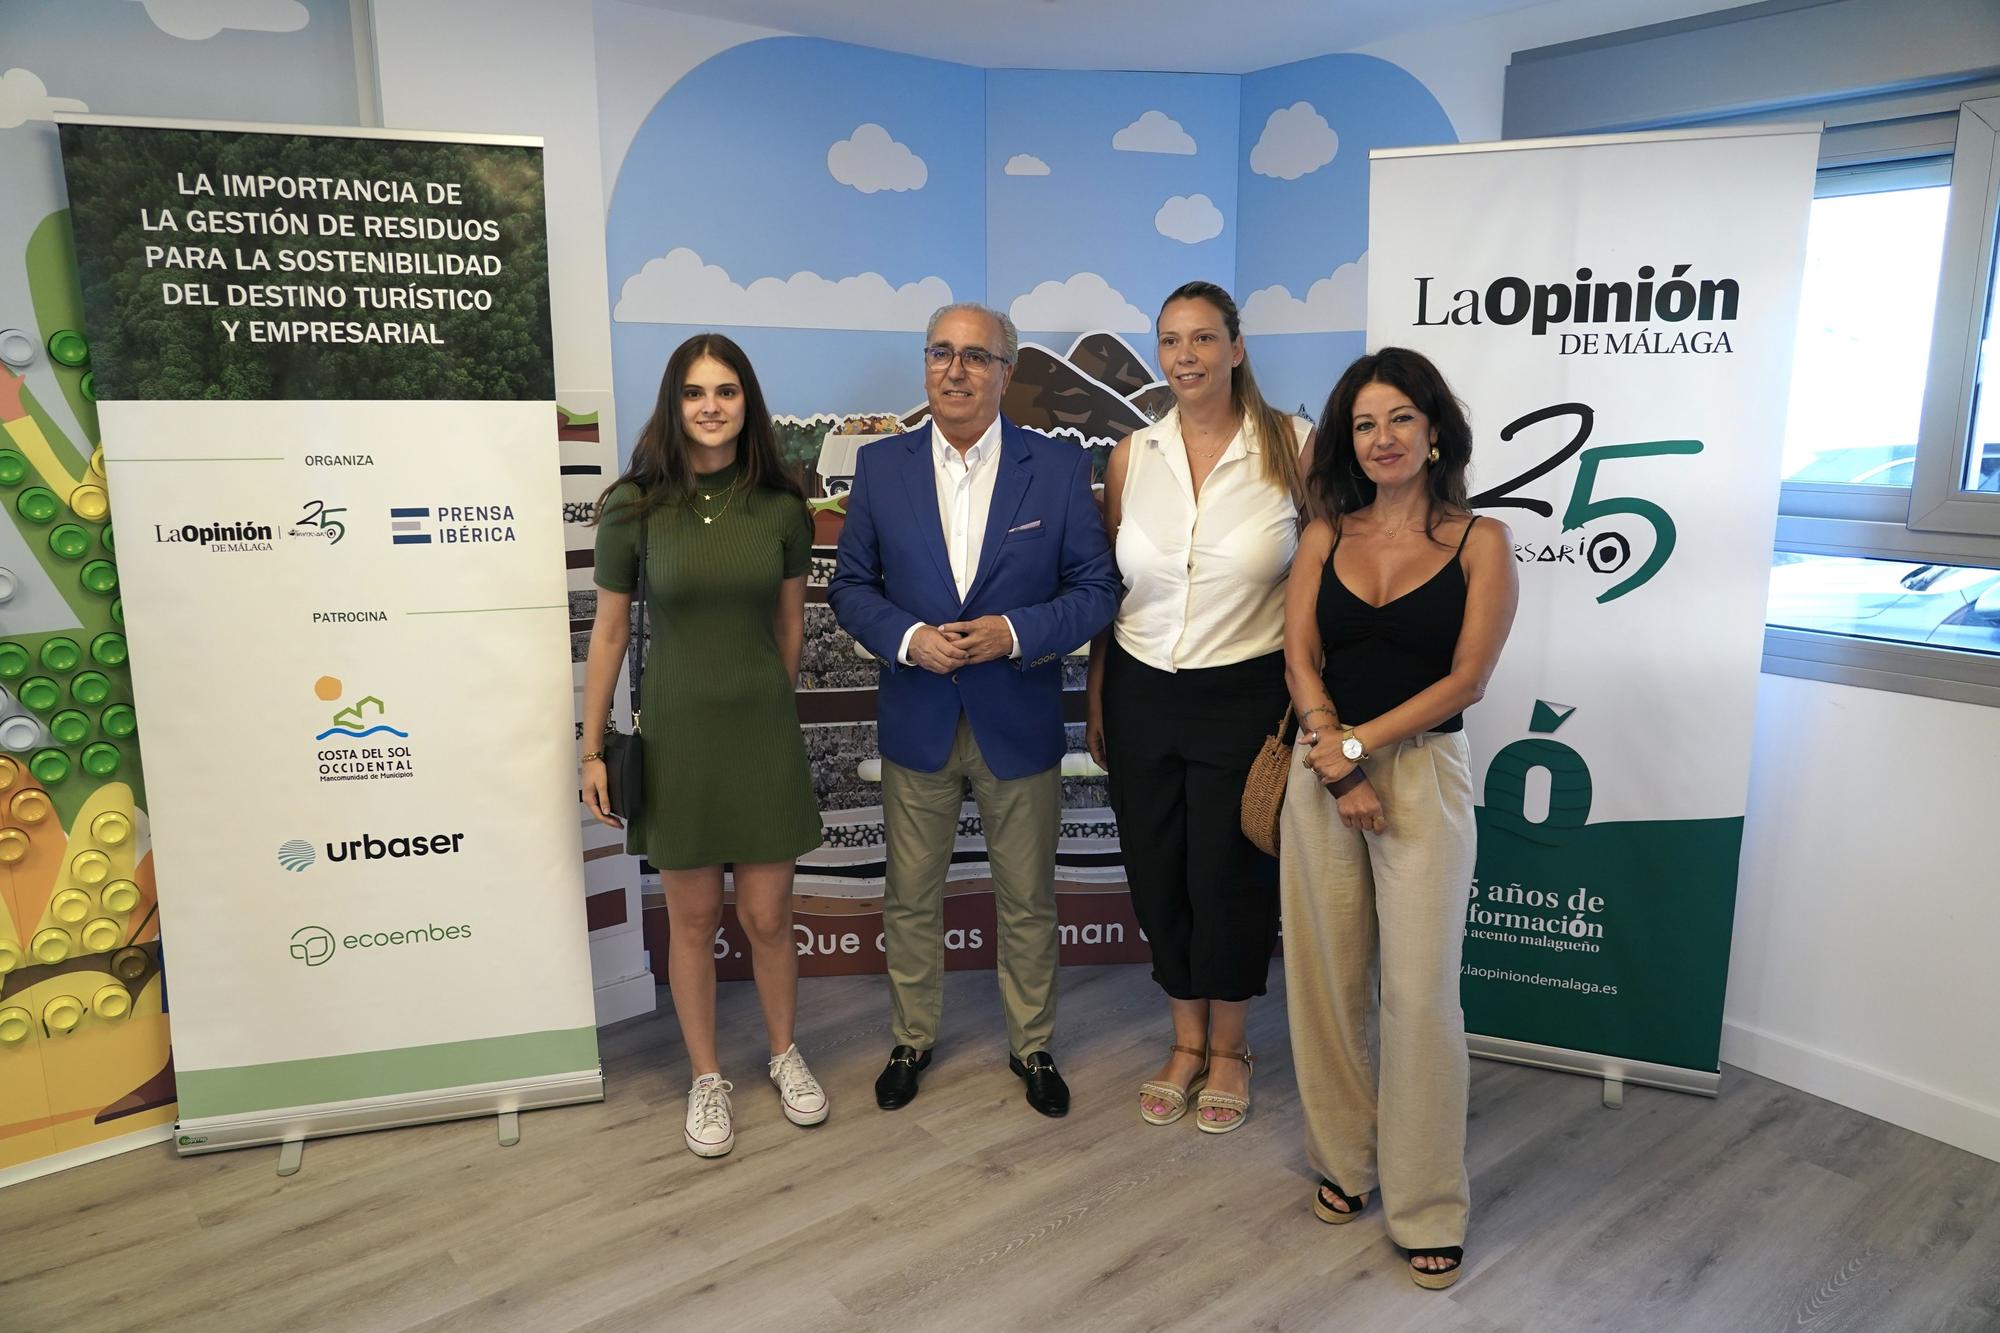 La Opinión de Málaga y Prensa Ibérica organizan en Casares la jornada ‘La importancia de la gestión de residuos para la sostenibilidad del destino turístico y empresarial’